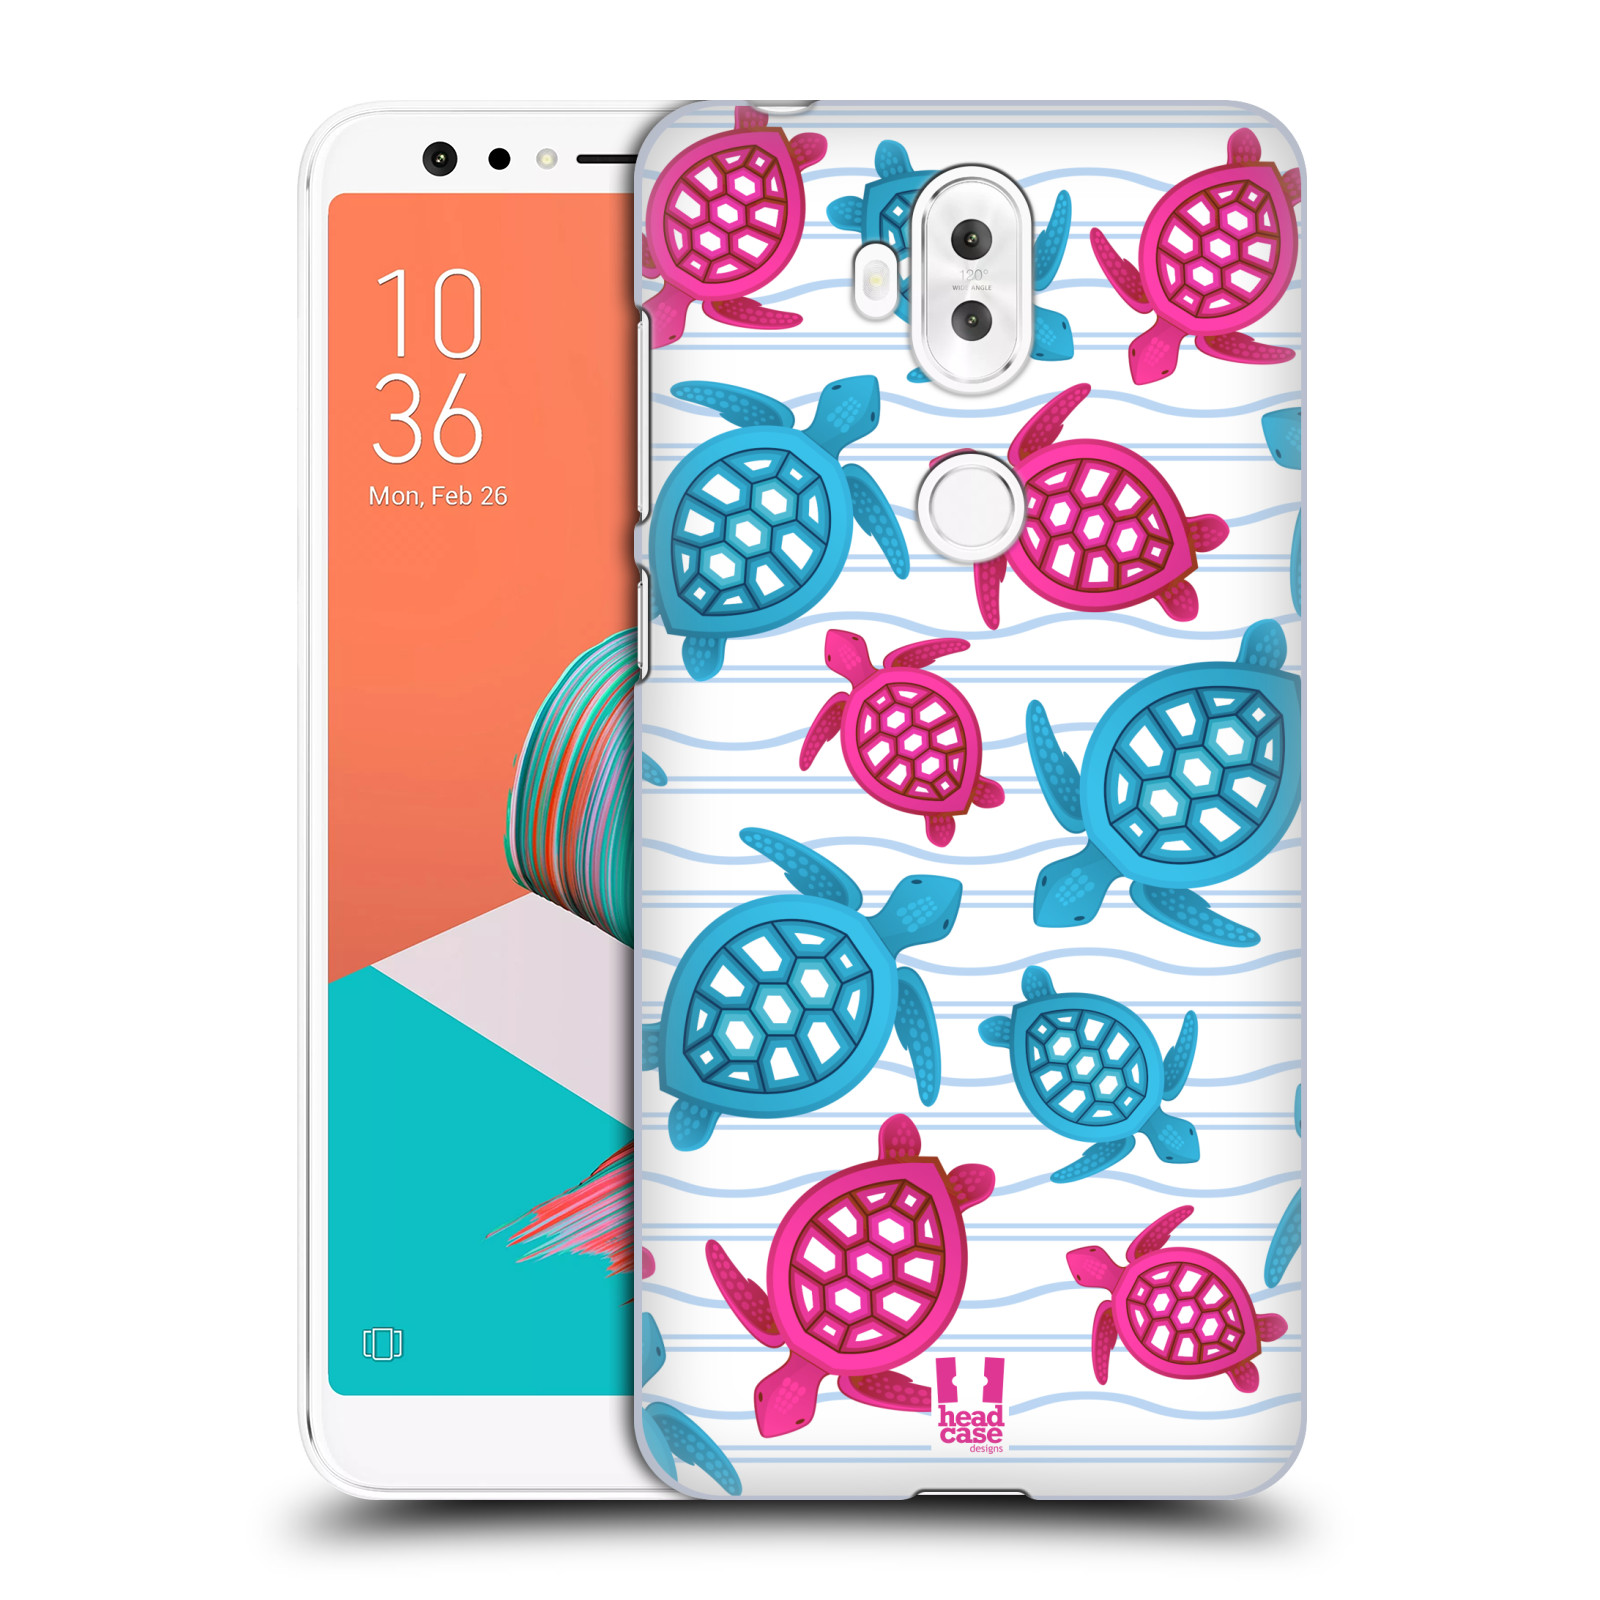 Zadní obal pro mobil Asus Zenfone 5 Lite ZC600KL - HEAD CASE - kreslený mořský vzor želvičky